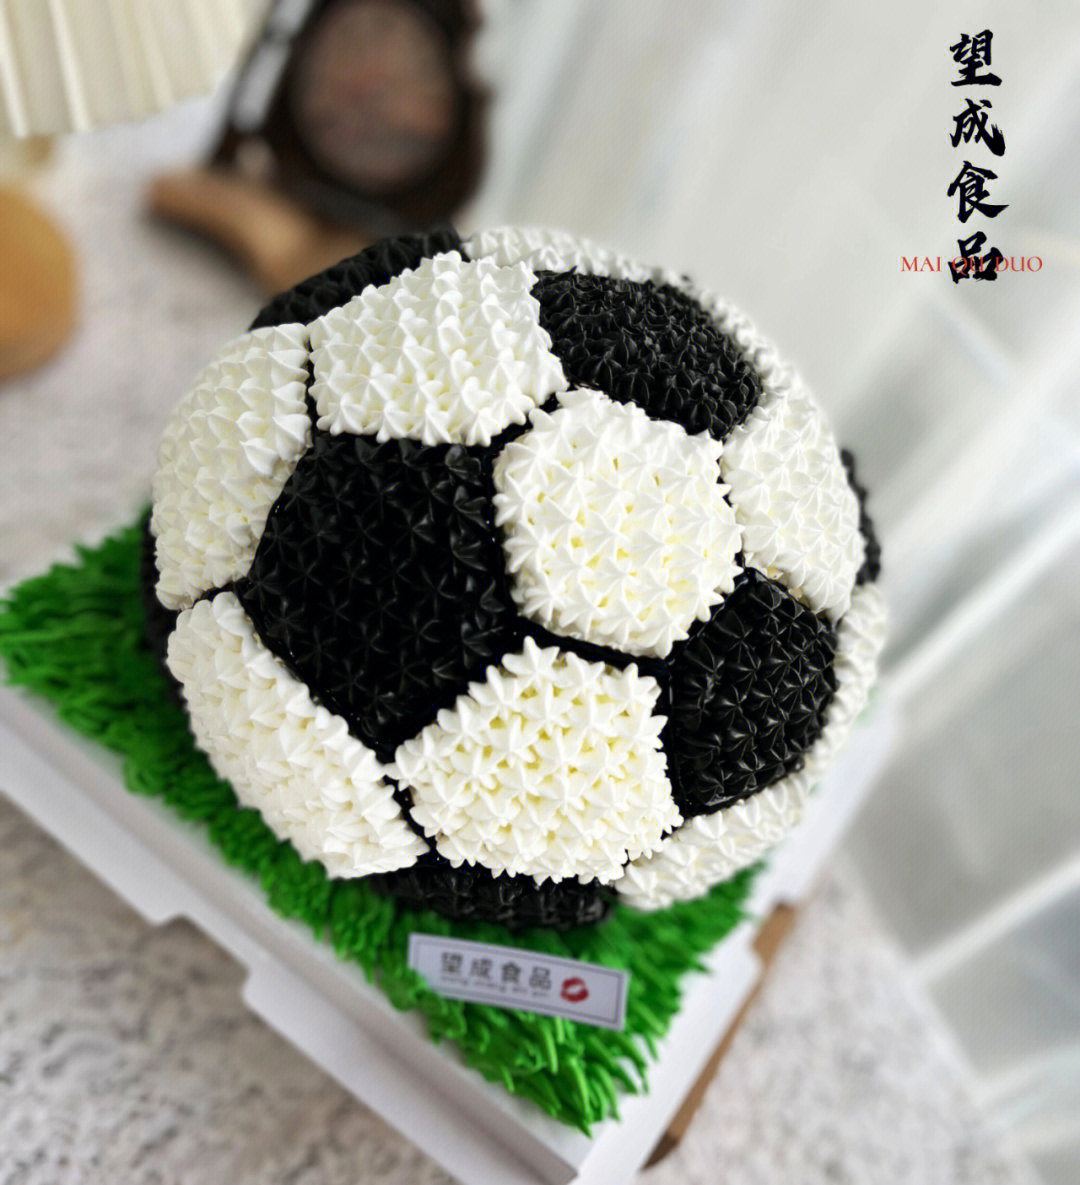 足球蛋糕